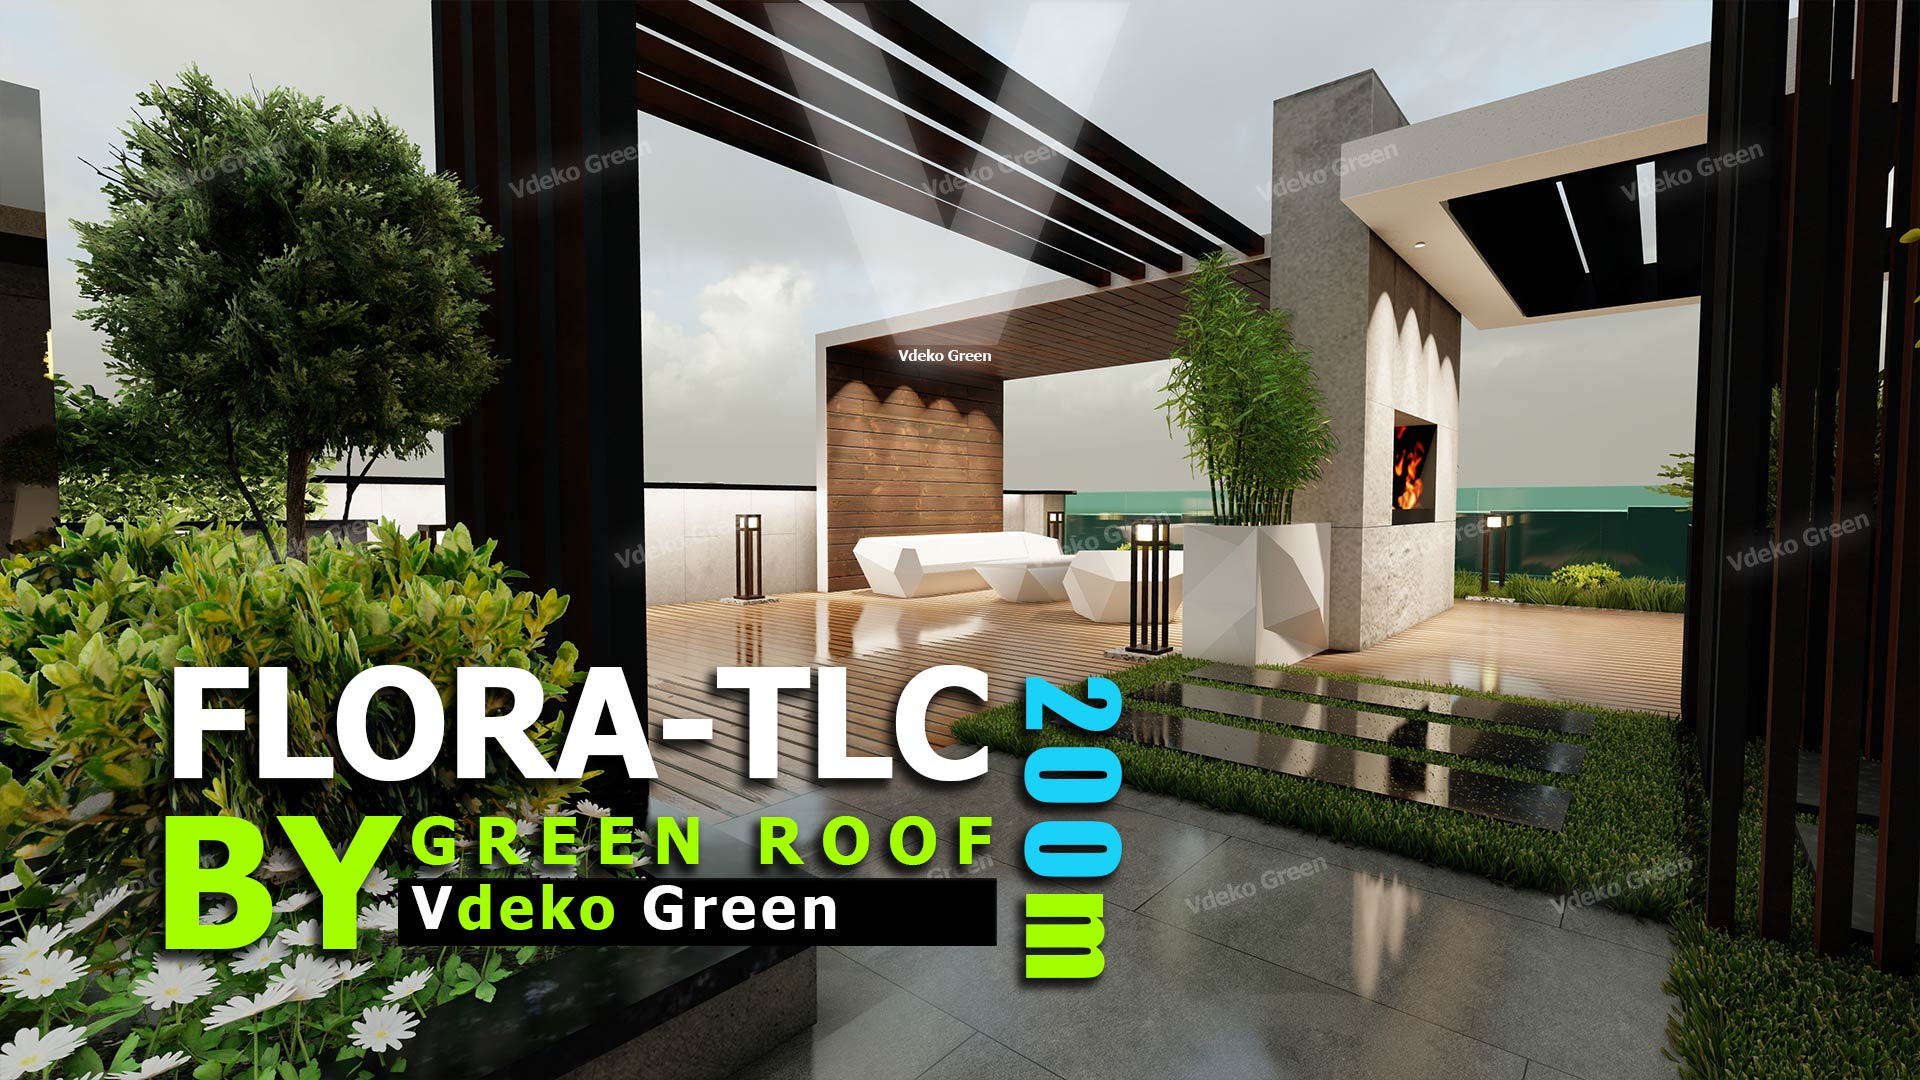 روف گاردن ( بام سبز) Flora TLC - طراحی و اجرای روف گاردن توسط ویدکو گرین - Vdeko Green